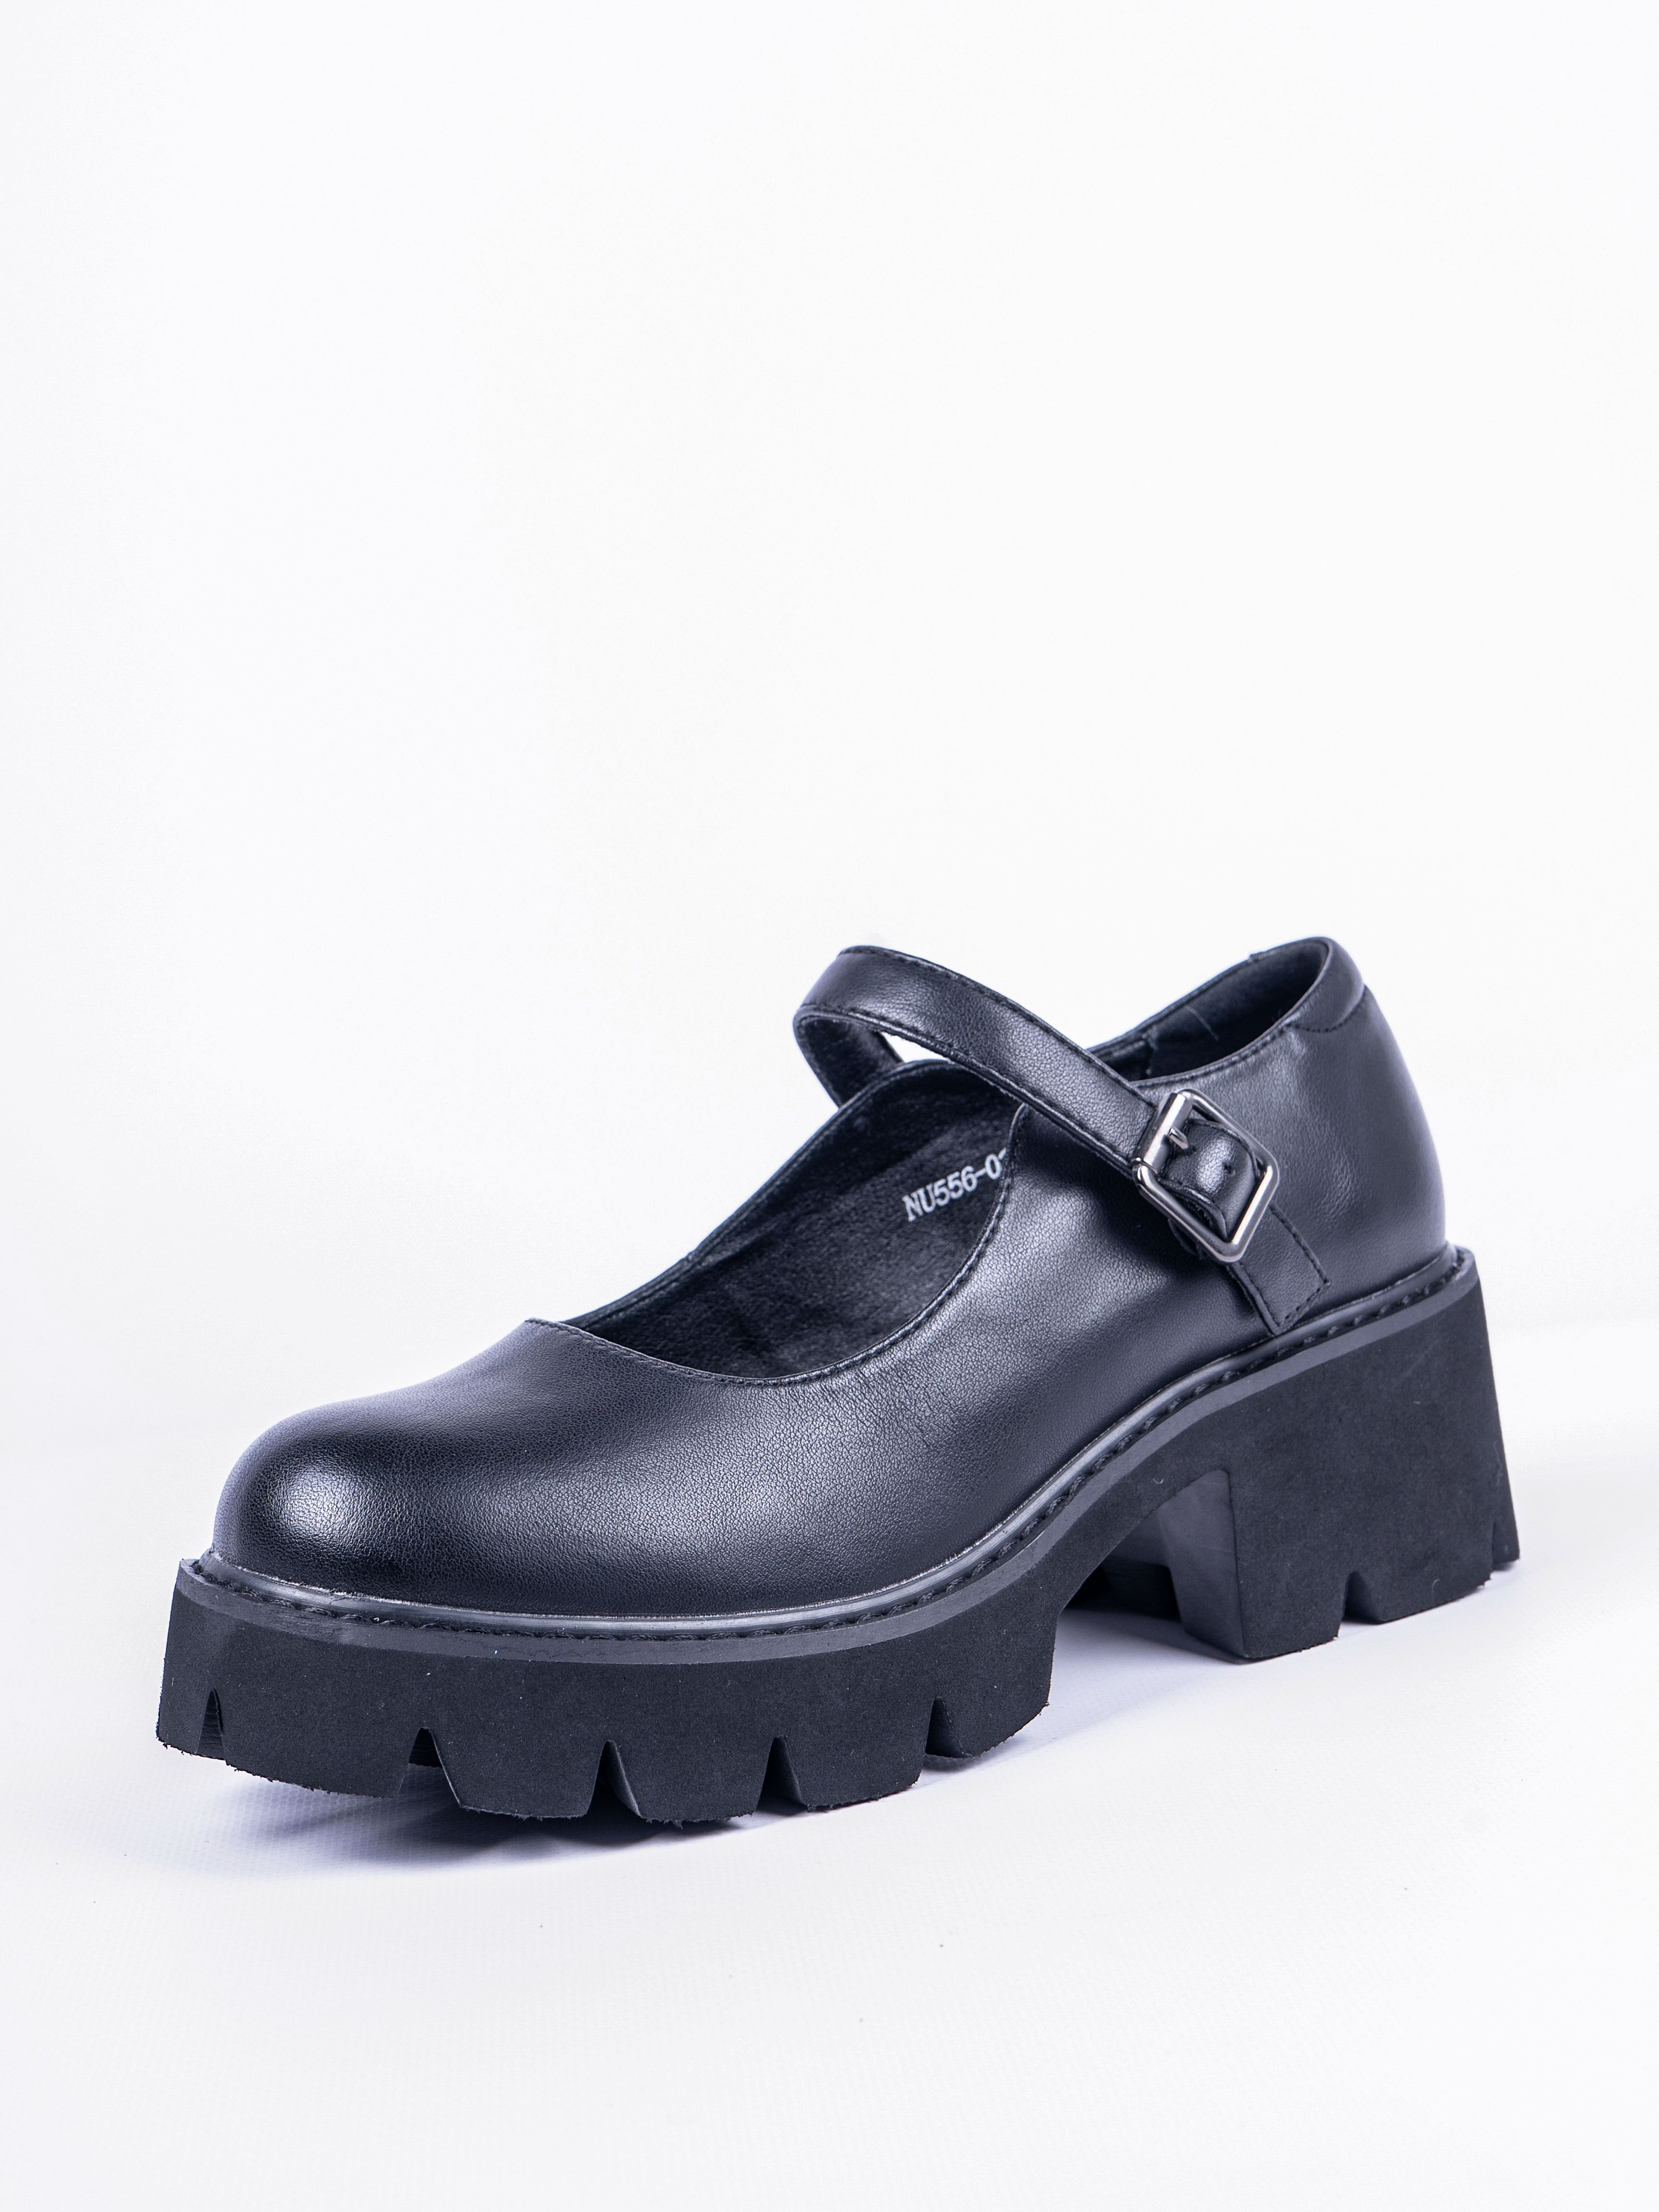 Туфли женские Baden NU556-021 черные 40 RU